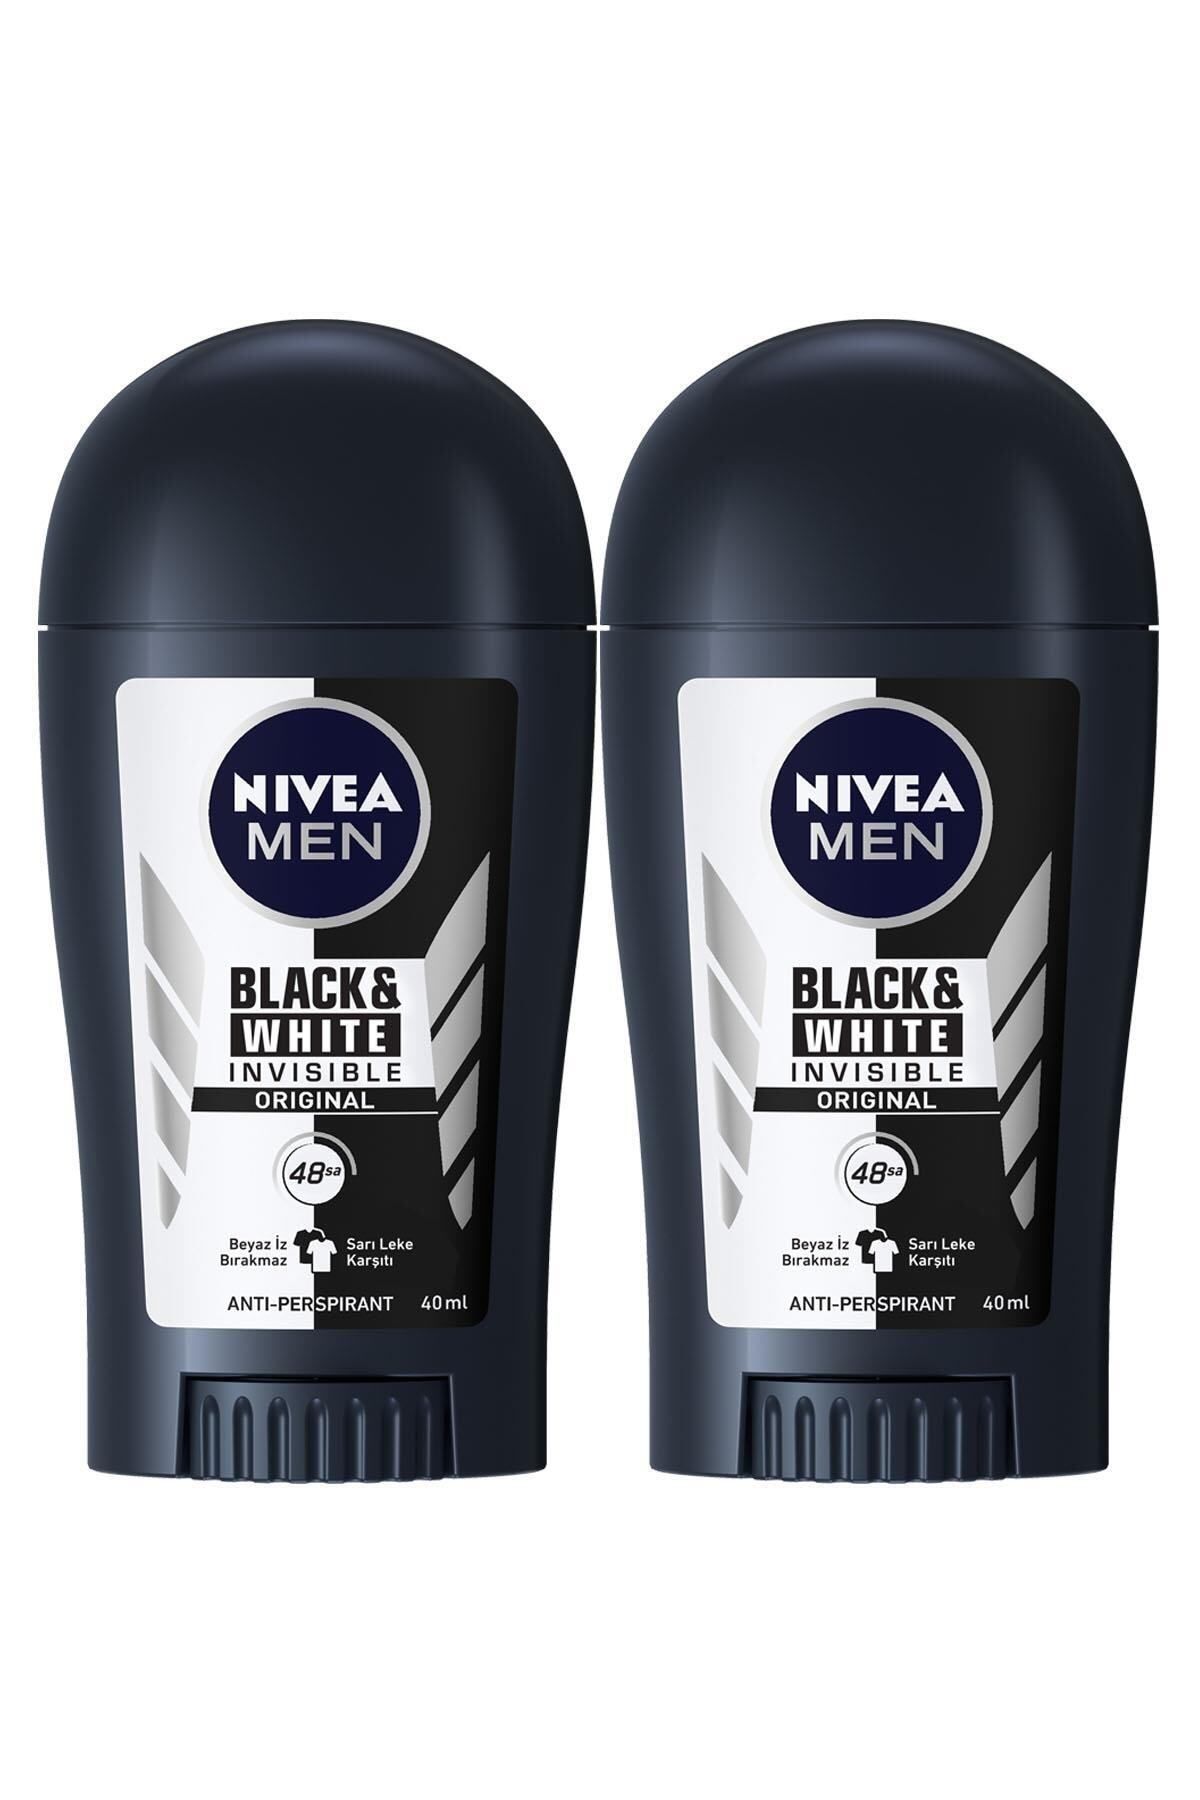 NIVEA Men Erkek Stick Deodorant Black&white Invisible Original, 48 Saat Anti-persiprant Koruma 40mlx2